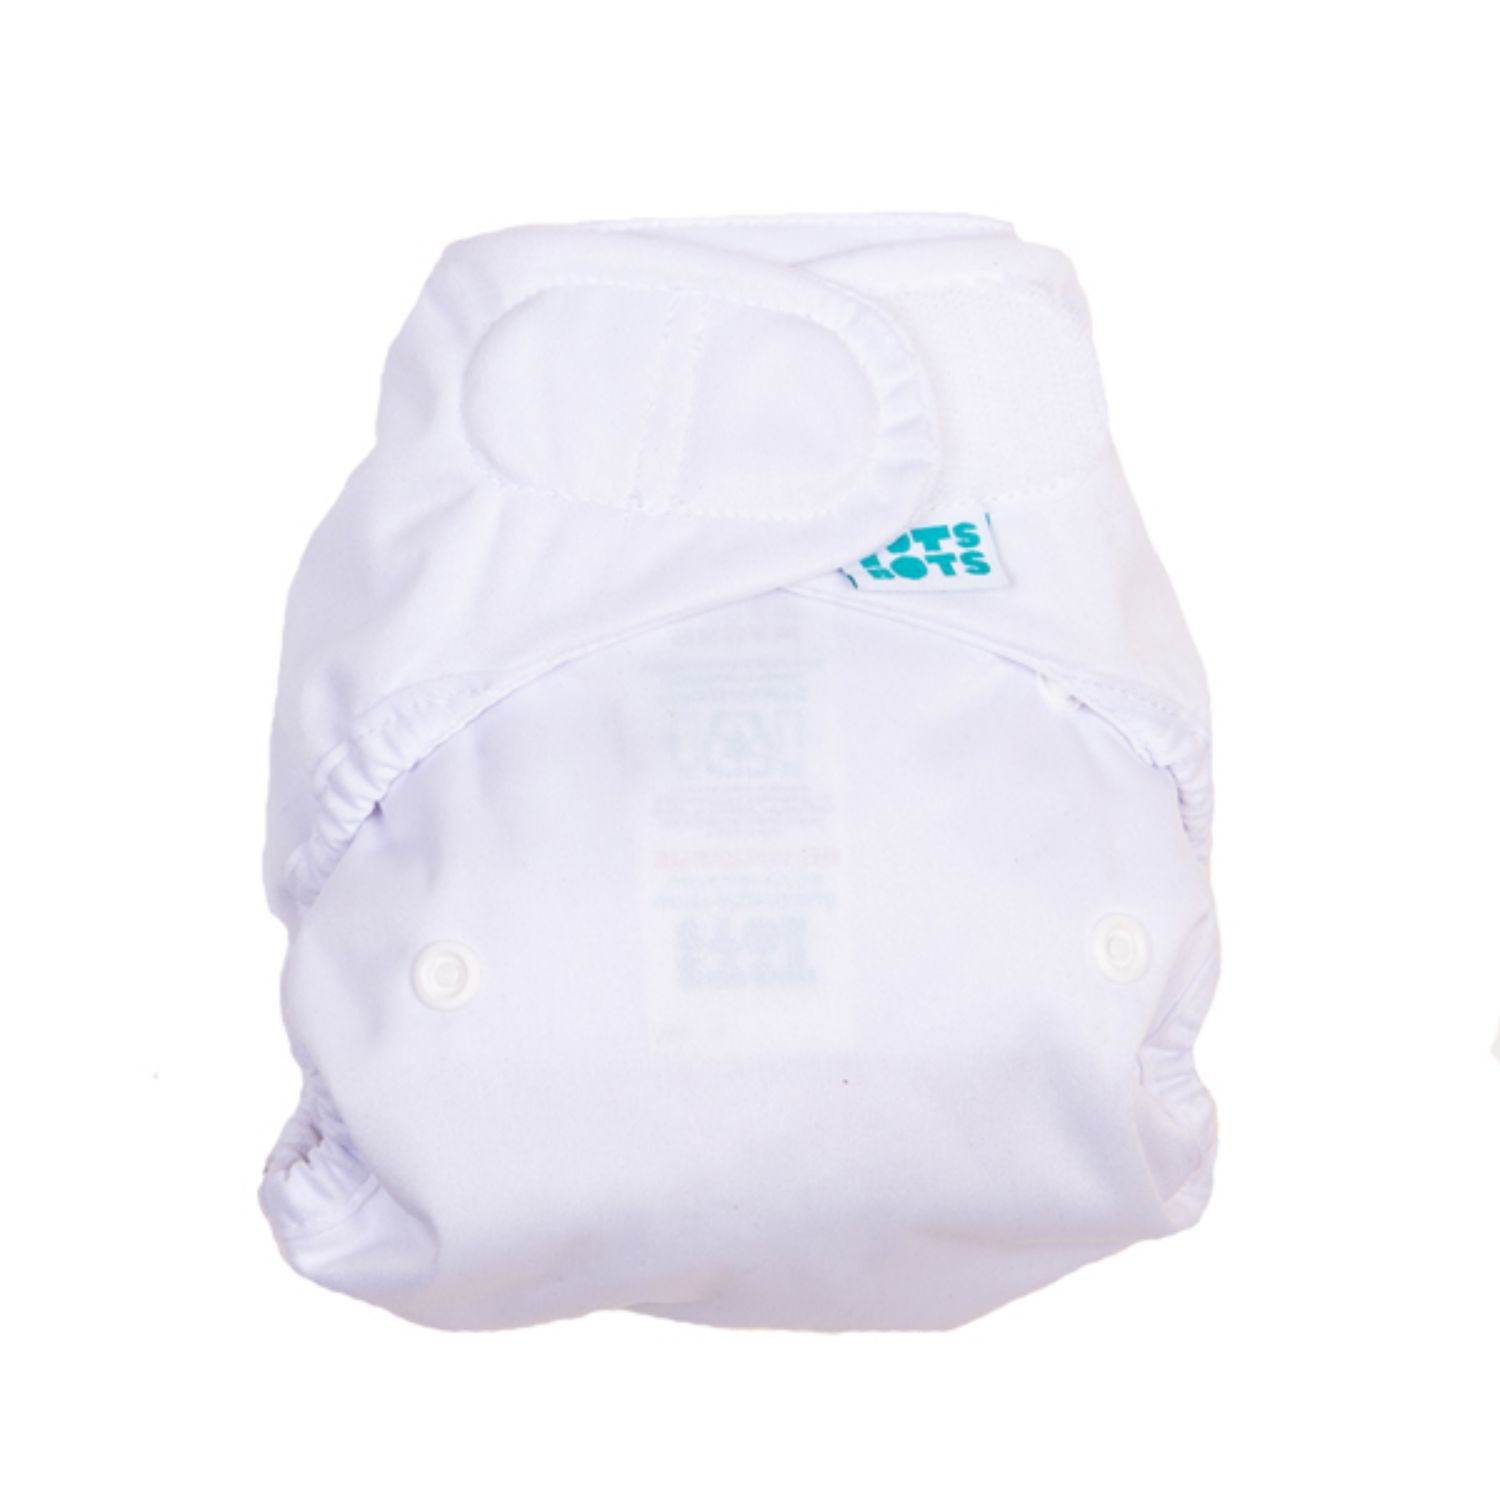 Totsbots Bamboozle Nappy Cover 2.0 Size: Neugeborene (2 - 7 kg) / TotsBots pattern: White